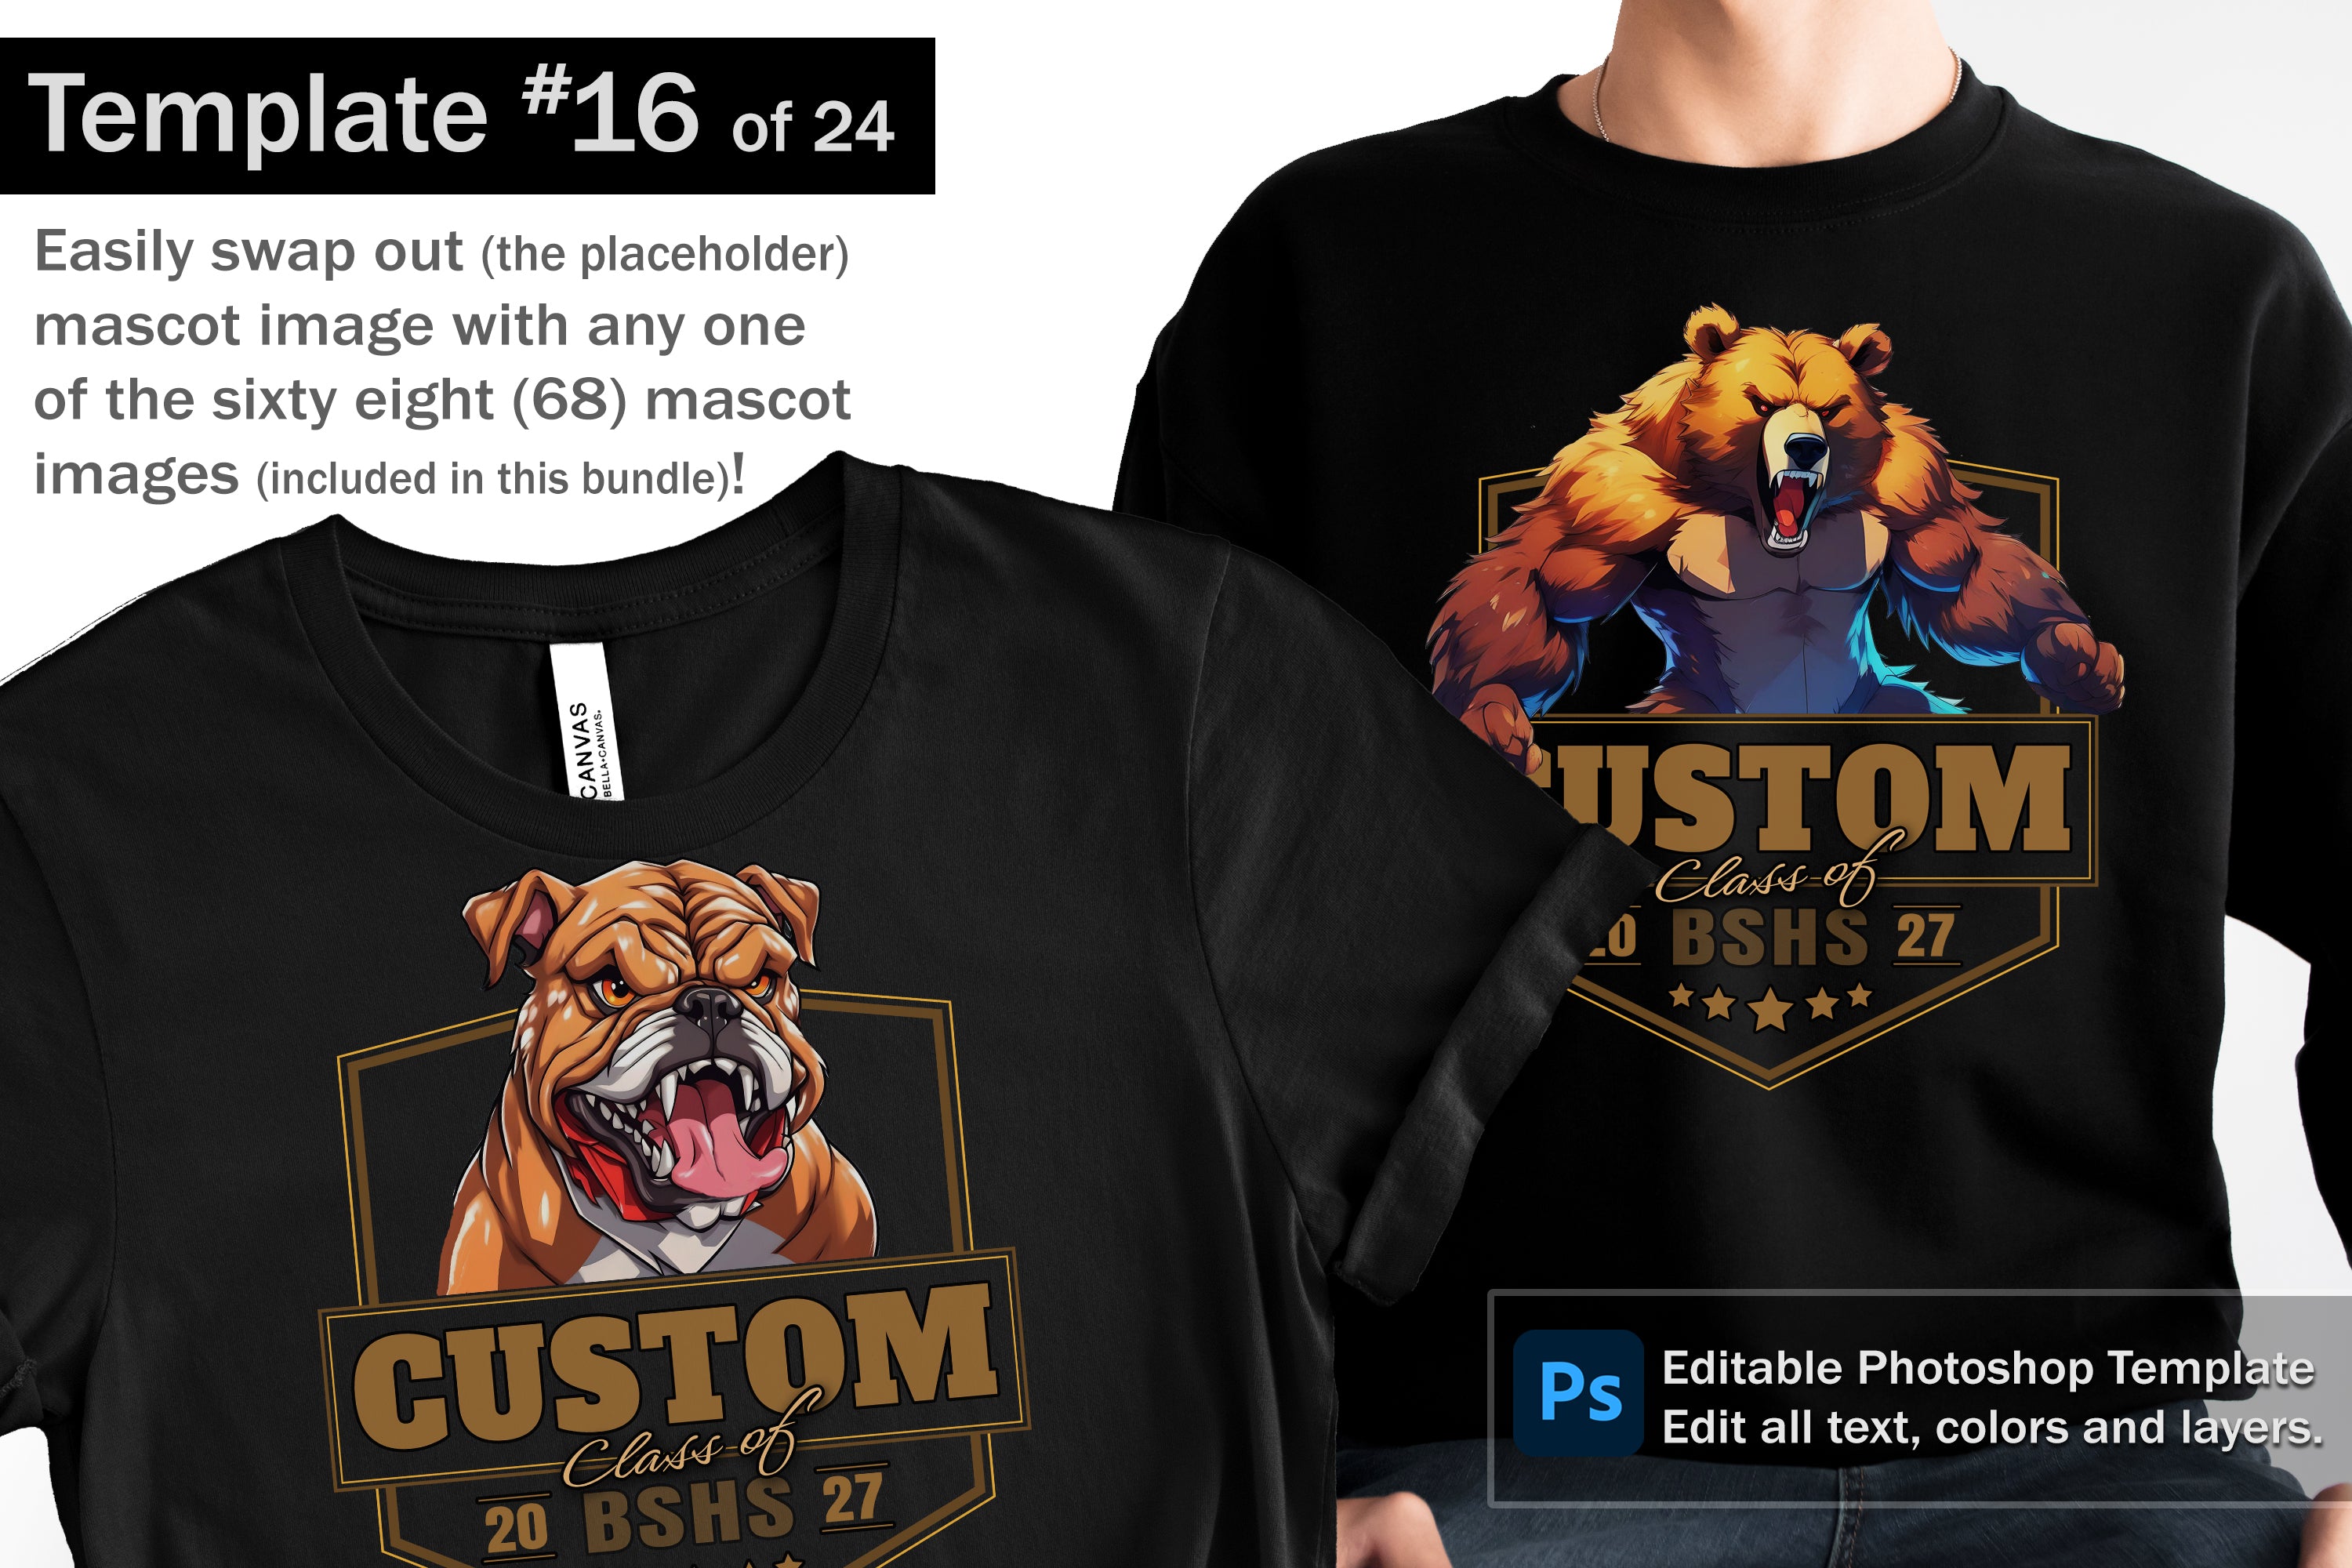 Bulldog Logo and DIY T-shirt Design Bundle